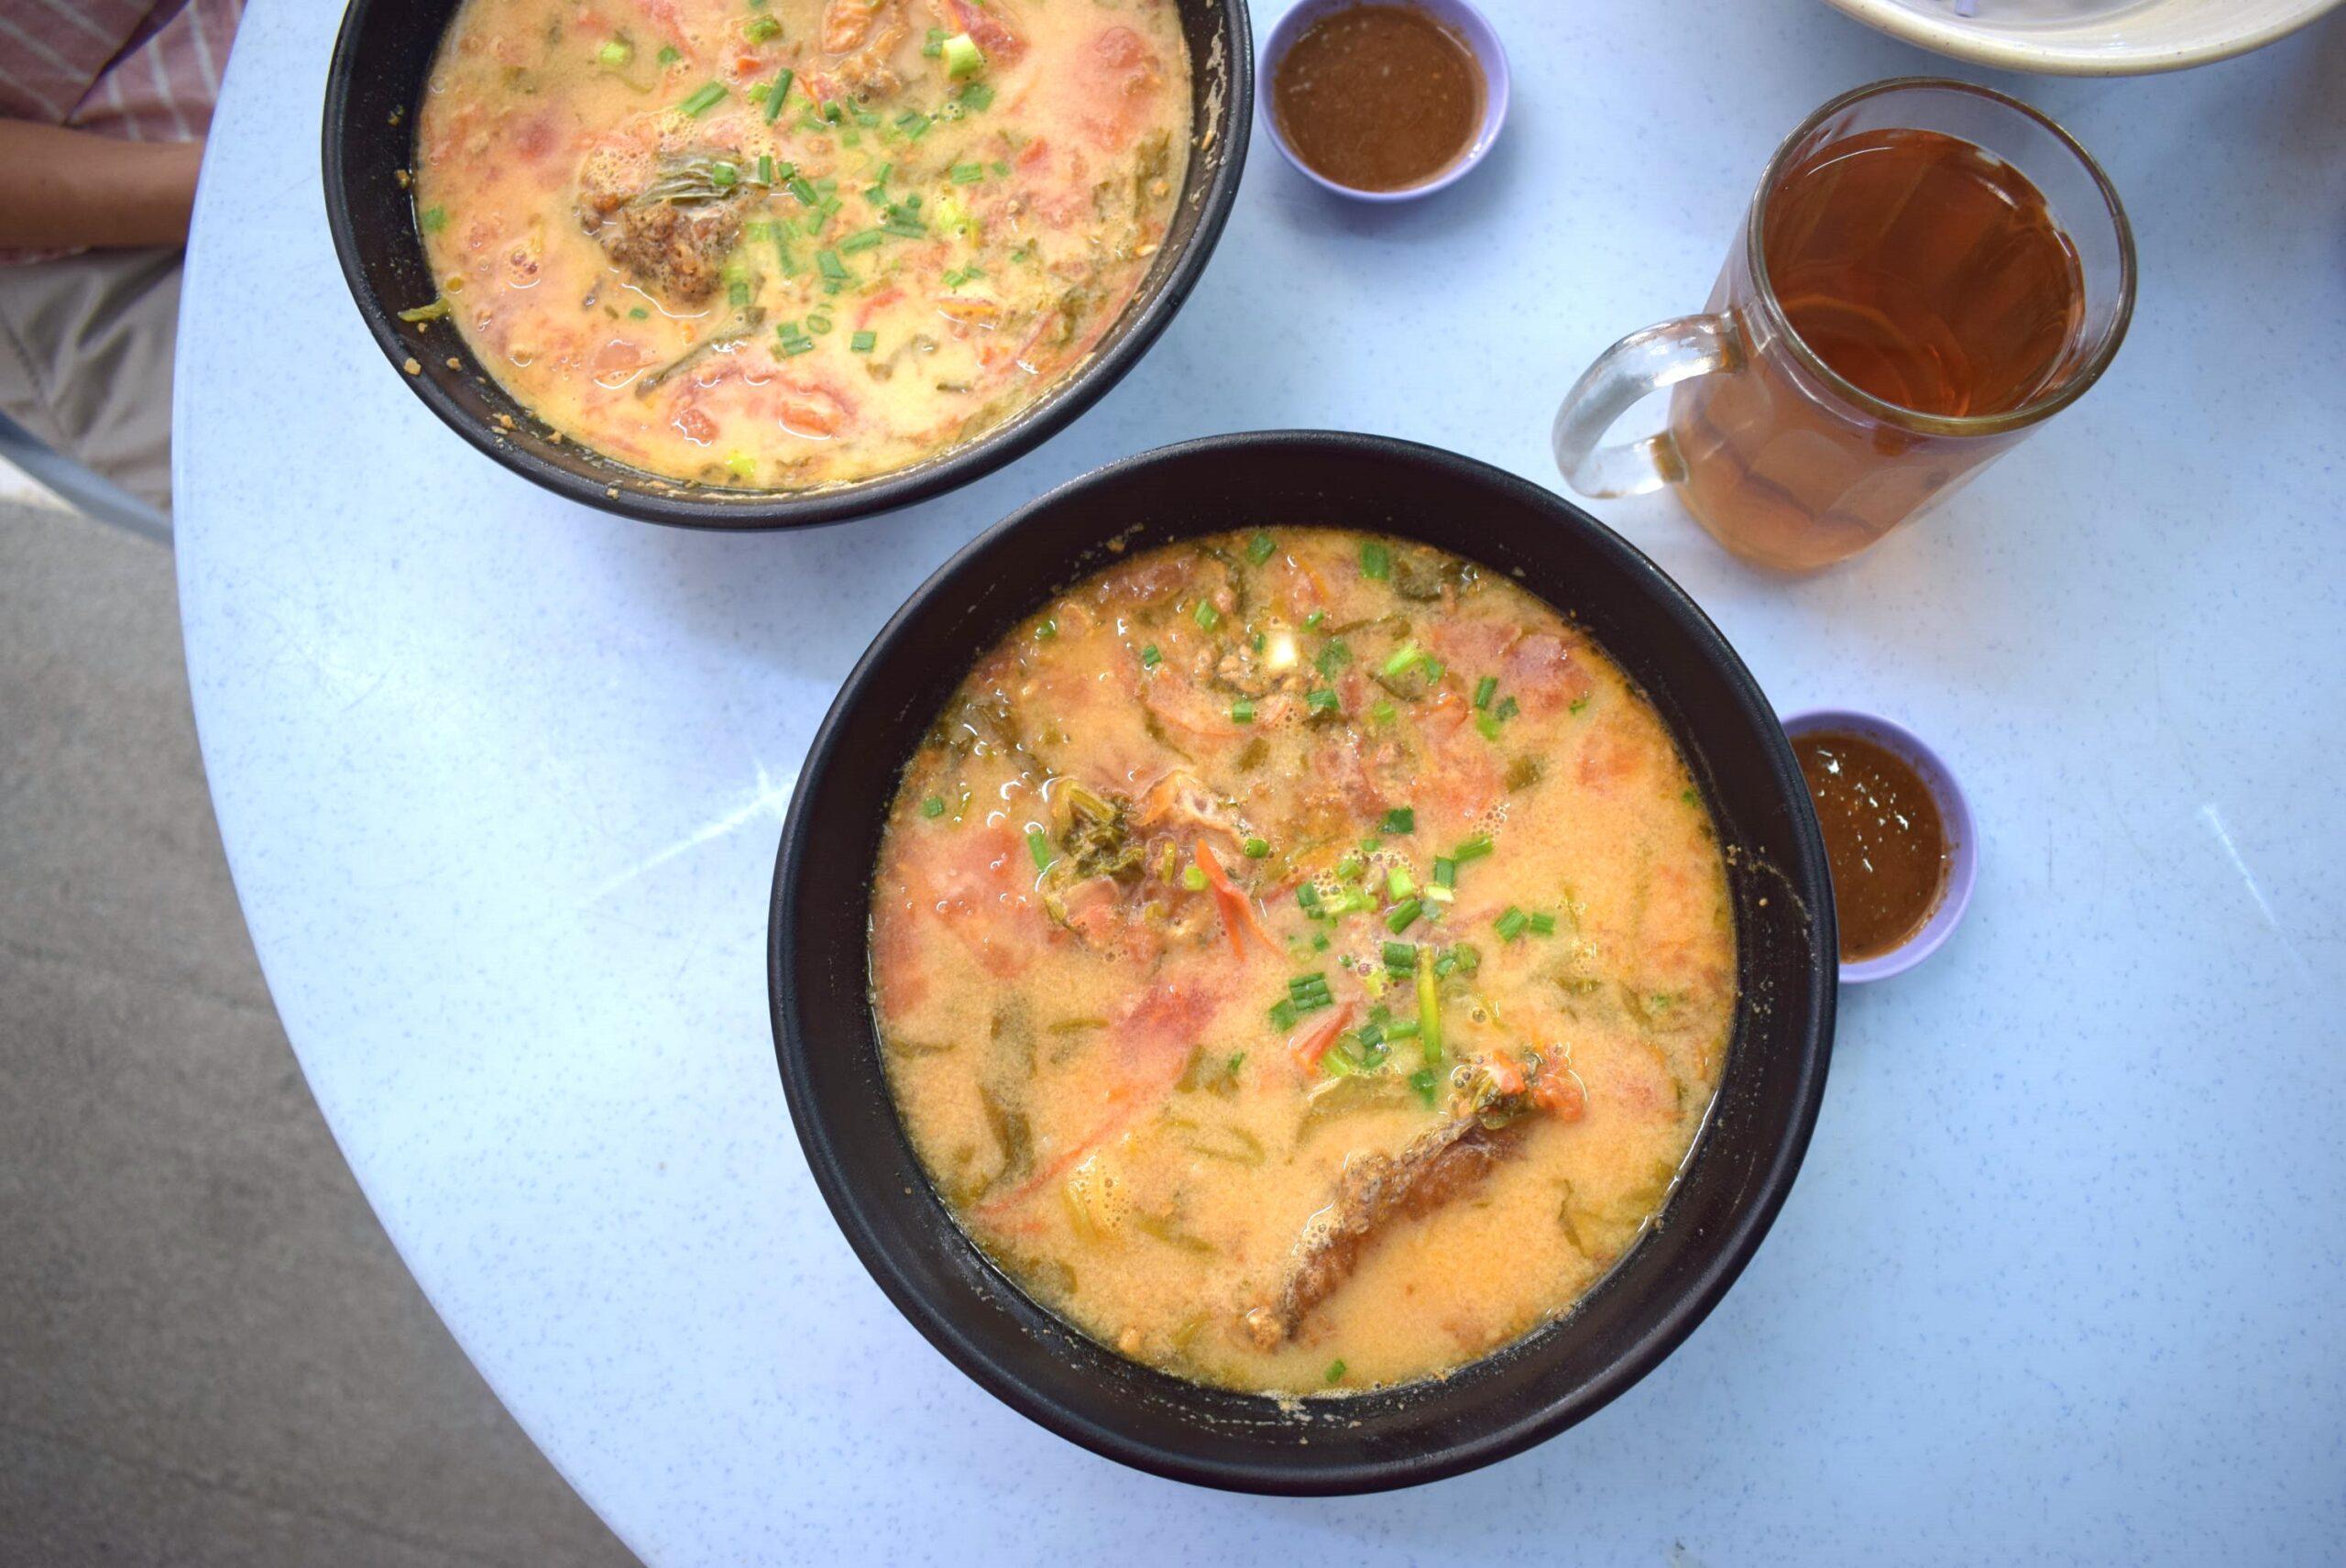 「Hui Ji」のフィッシュヘッドヌードル。魚の頭や鶏ガラなど多種の材料を煮込んだ絶品スープで、エバーミルクのまろやかさとトマトの酸味が味の決め手。